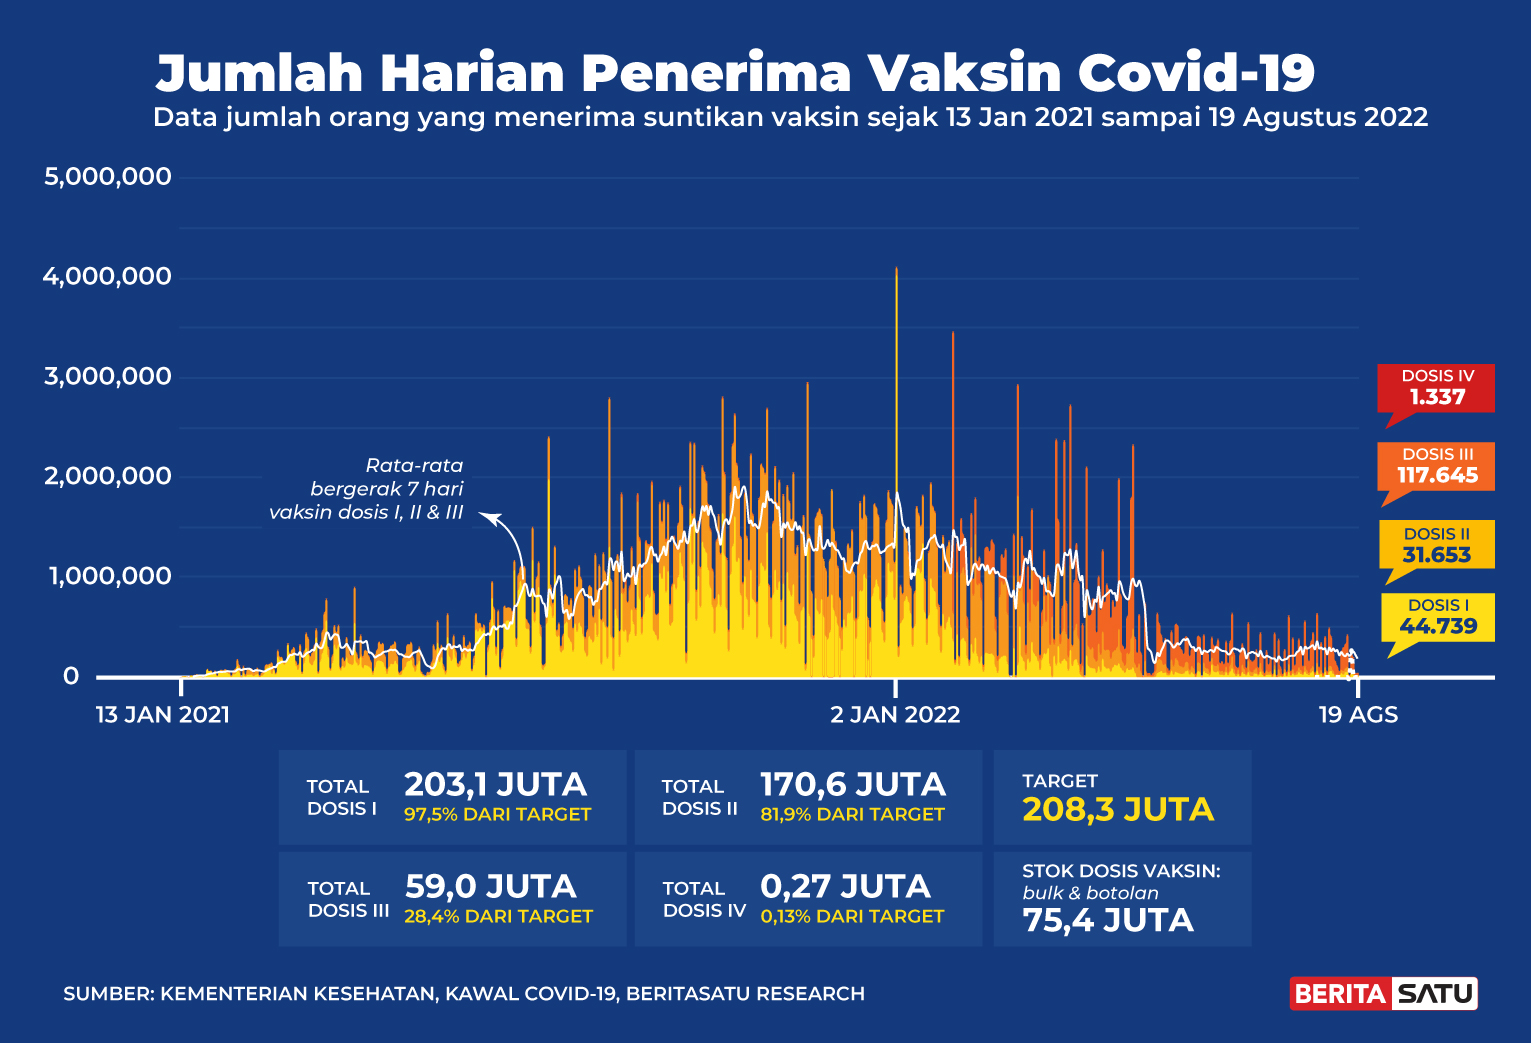 Penerima Vaksin Covid-19 di Indonesia sampai 19 Agustus 2022